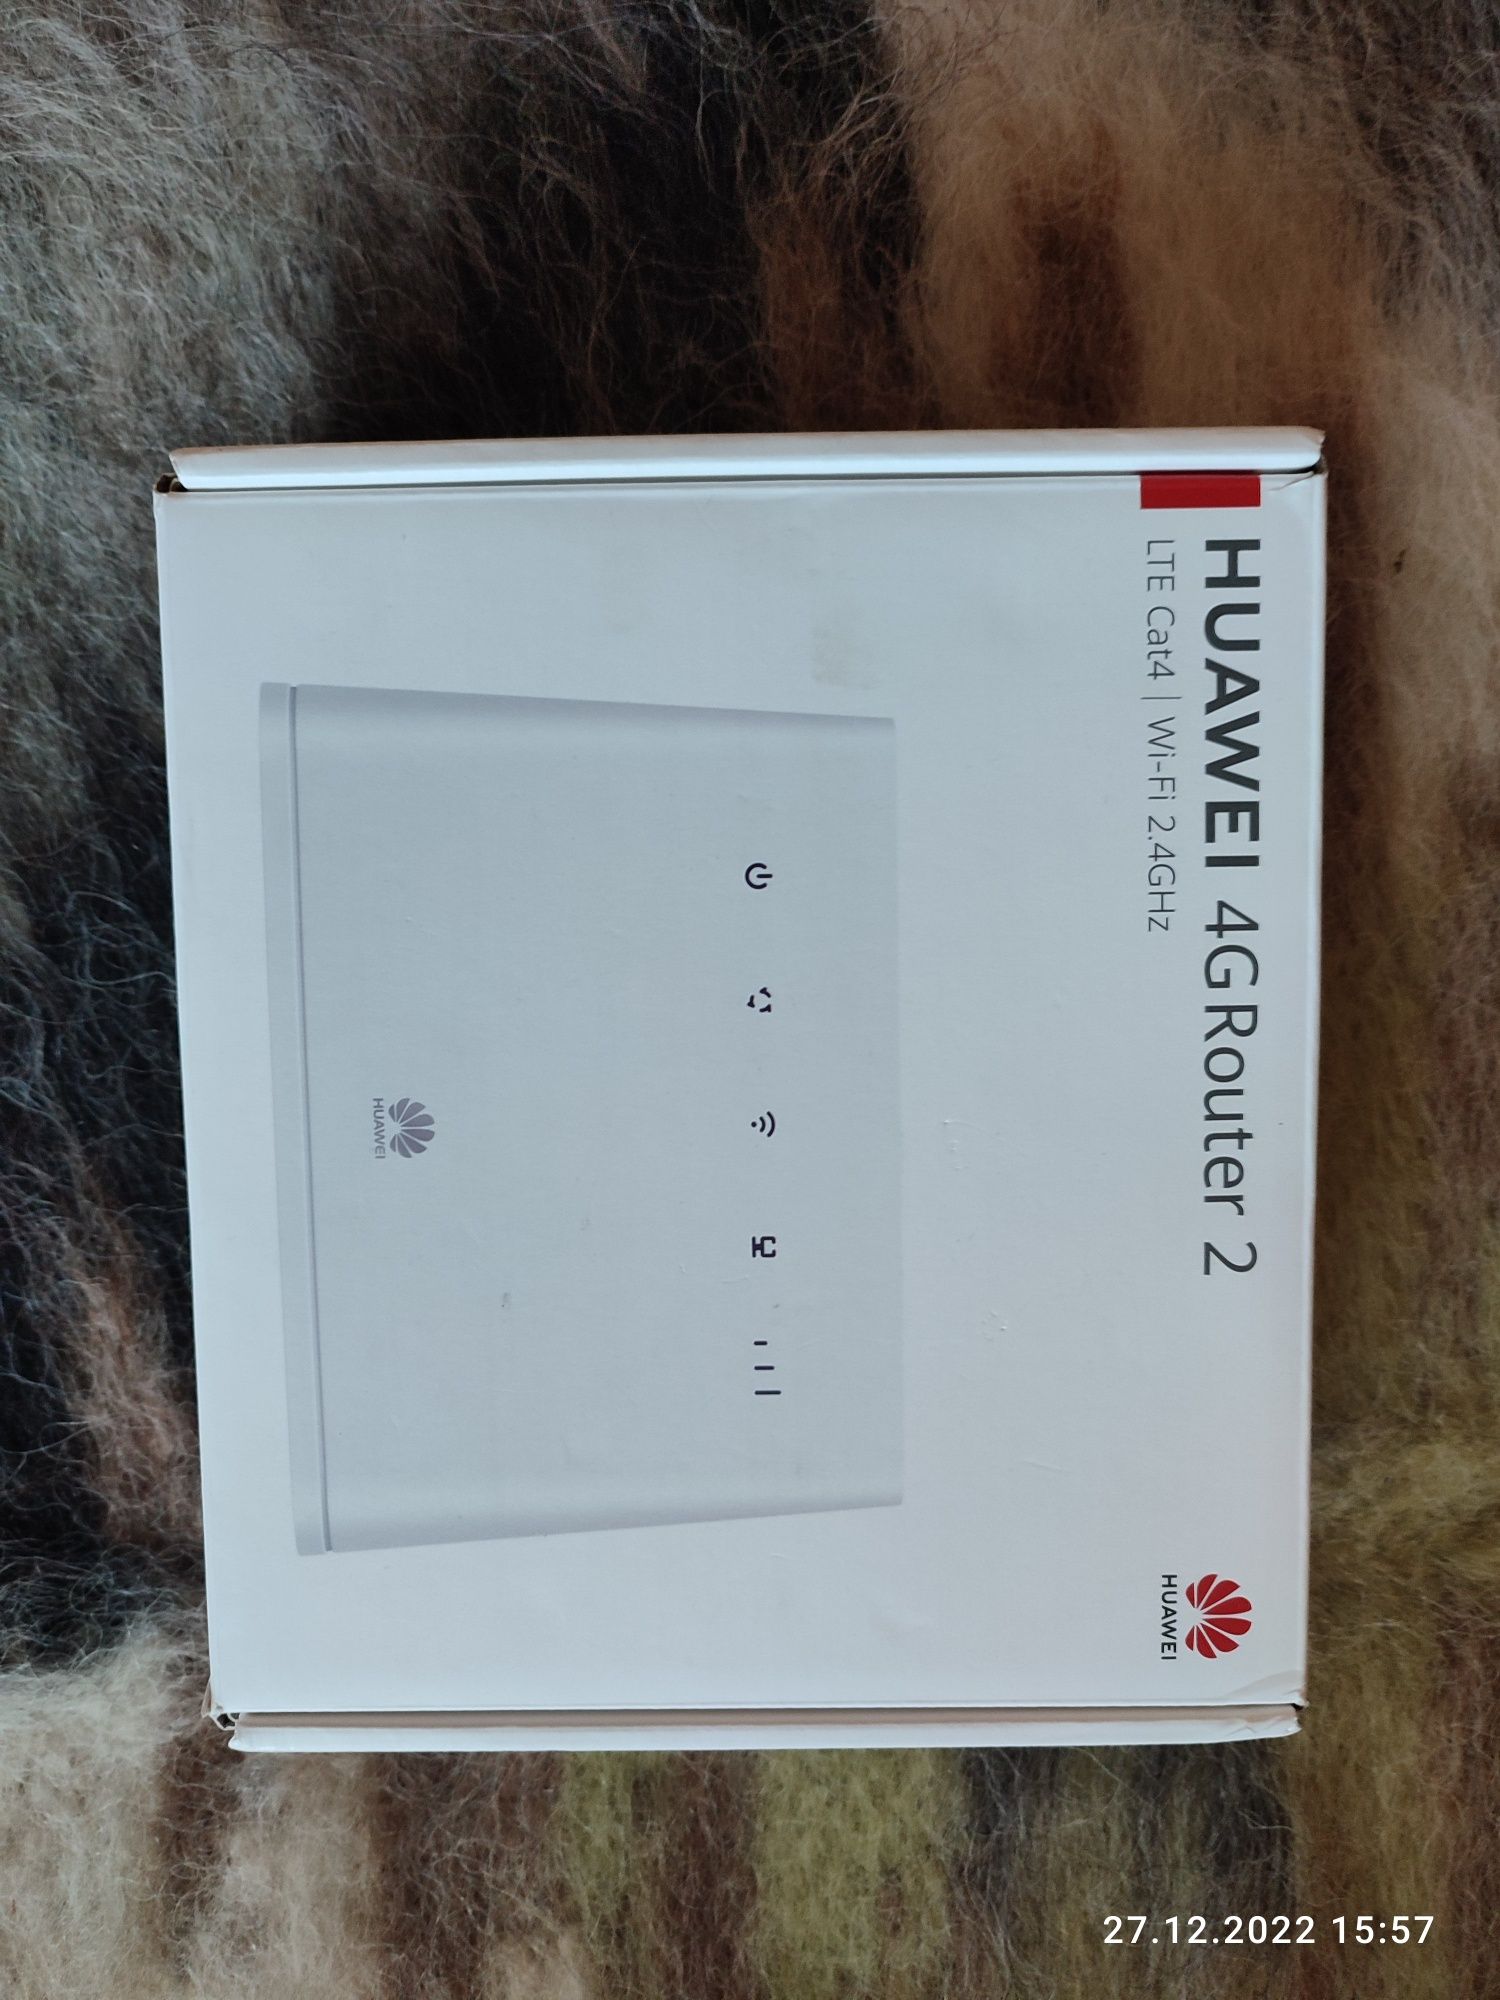 Huawei B311 — роутер і всі сім-карти  4G, роутер як ZTE 283U. + перехі